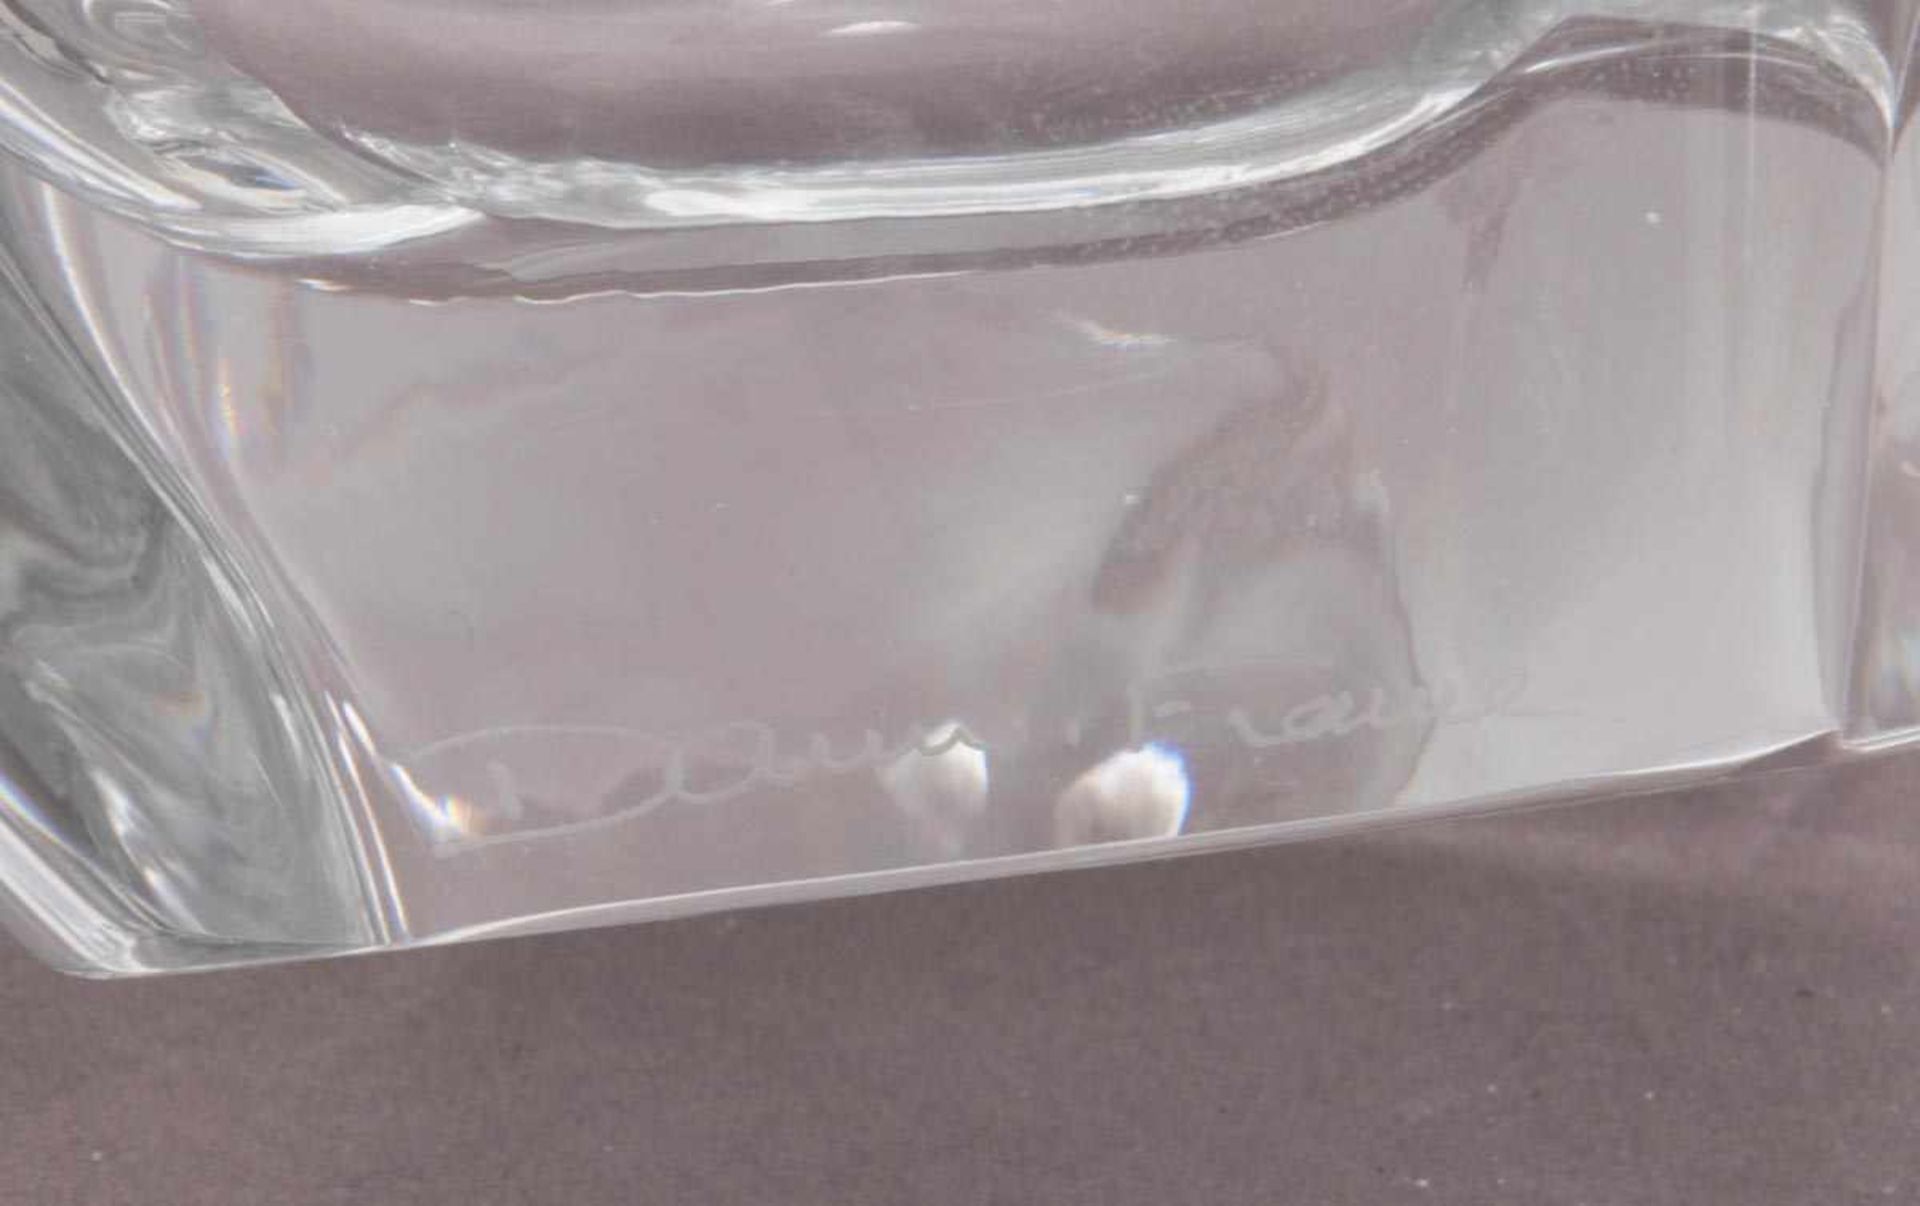 Längsovale, dickwandige Glasschale, seitlich signiert "Daum - France" Ca. 21 x 60 x 14,5 cm. - Bild 4 aus 4